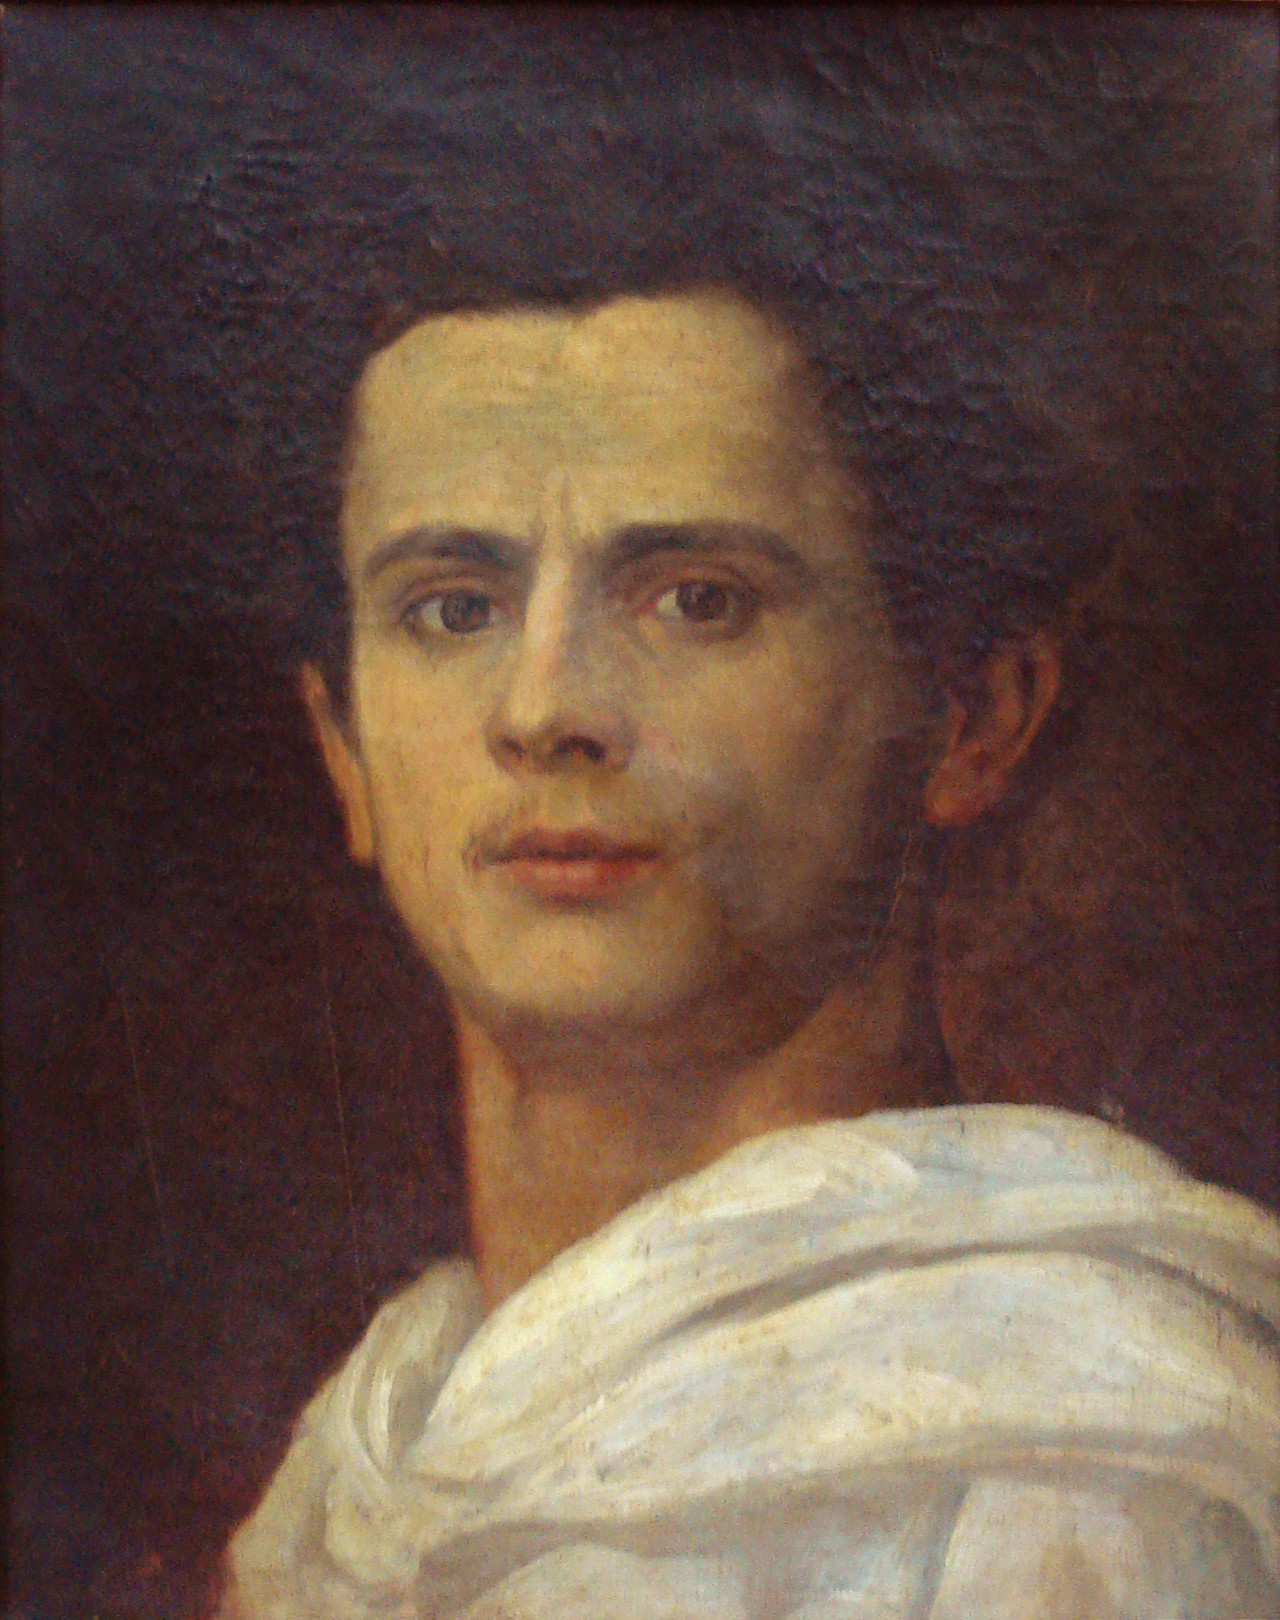 Jose Ferraz Almeida Júnior - 8 mai 1850 - 13 novembre 1899